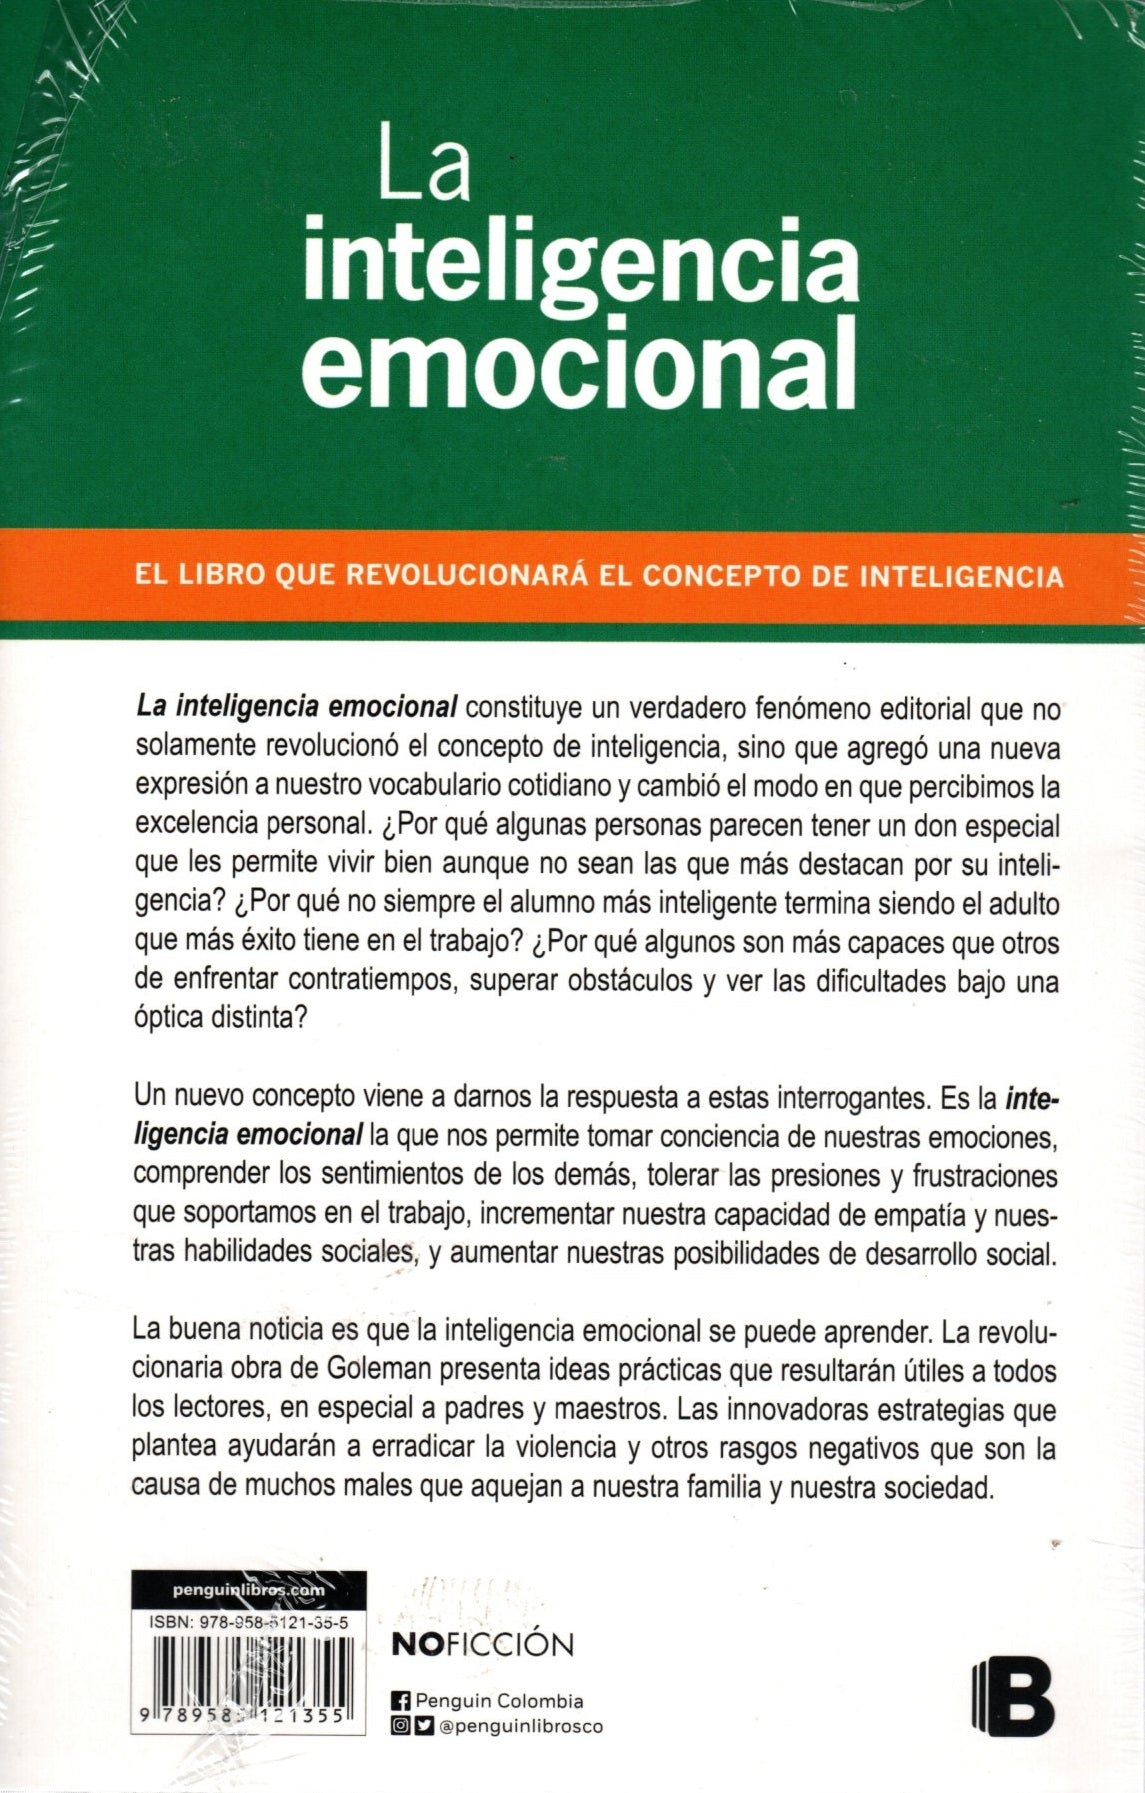 Libro Daniel Goleman - La Inteligencia Emocional